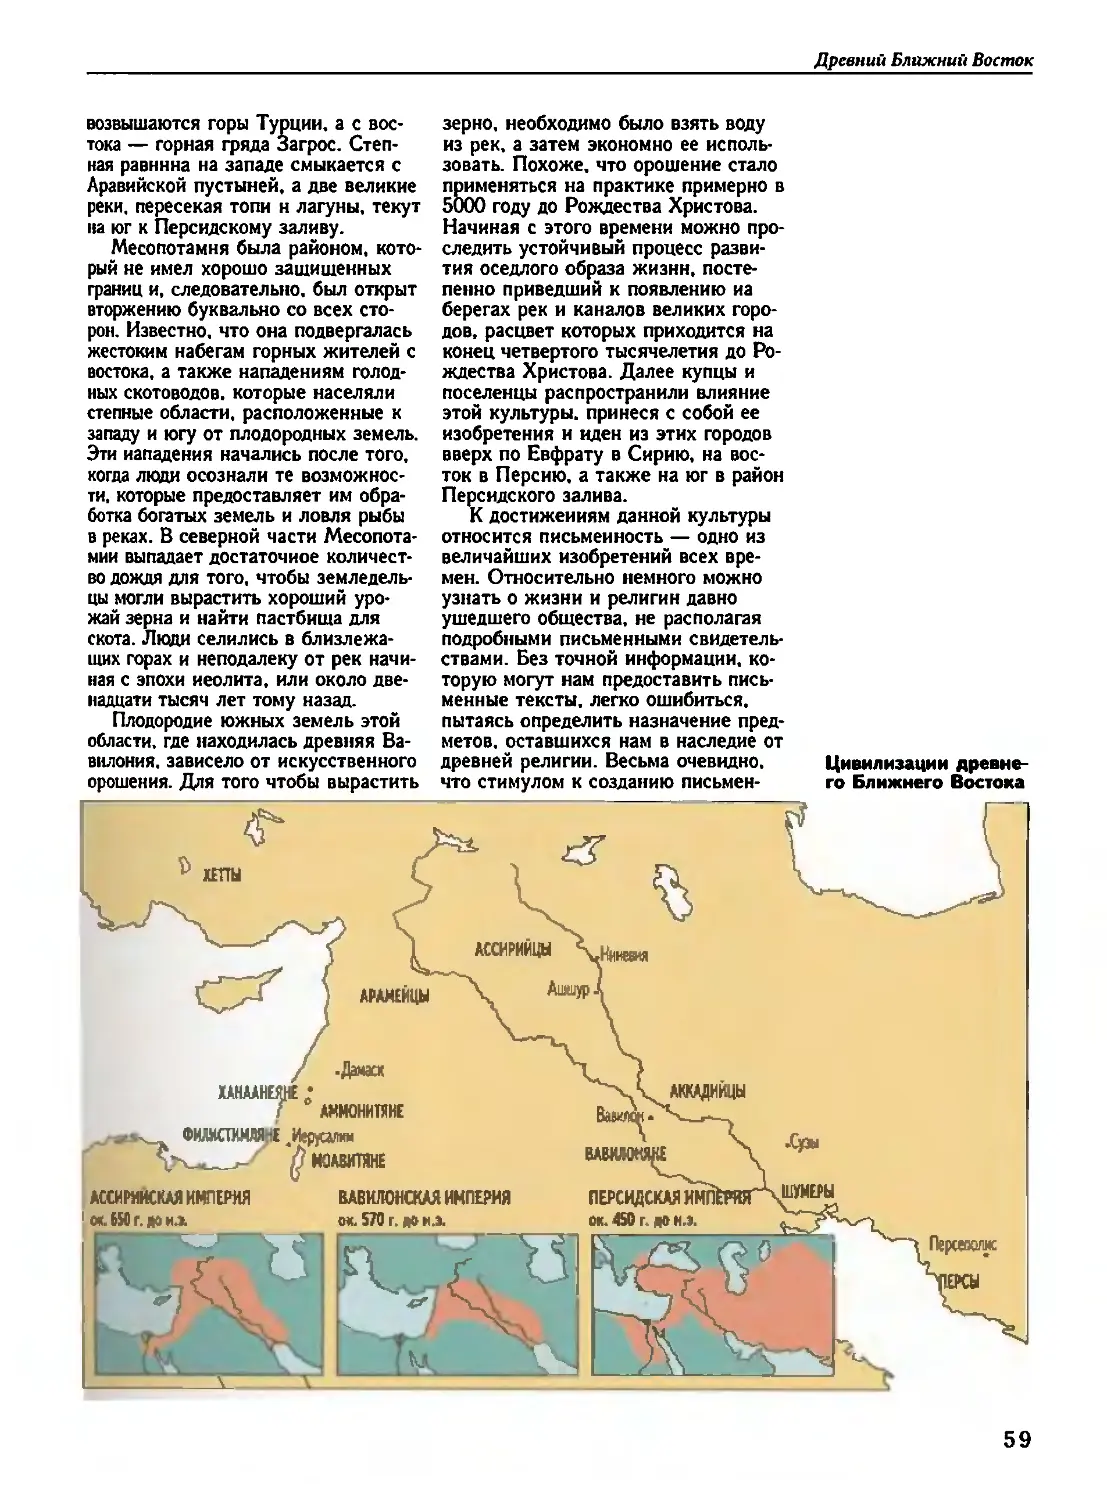 Карта· цивилизации древнего Ближнего Востока